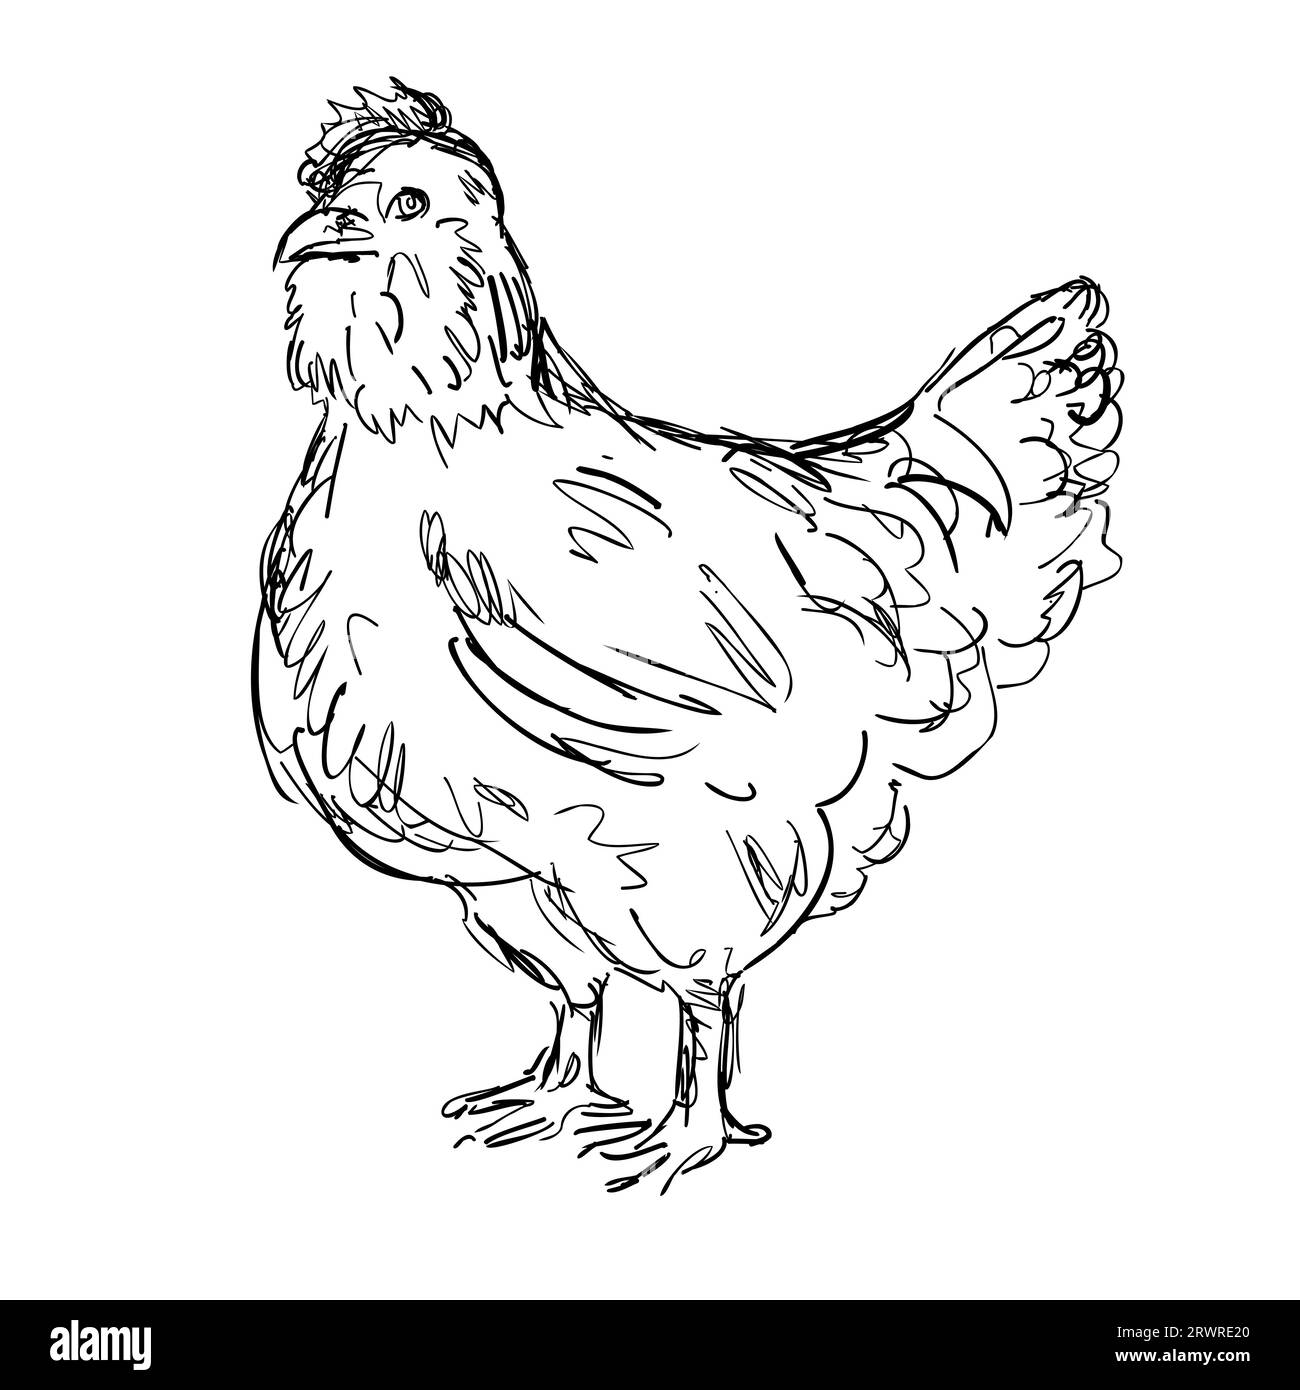 Zeichnung einer Zeichnung im Skizzenstil Illustration eines Ameraucana Hühnchens, einer amerikanischen Rasse von Haushuhn, von der Seite auf isoliertem weißem Hintergrund in bl gesehen Stockfoto